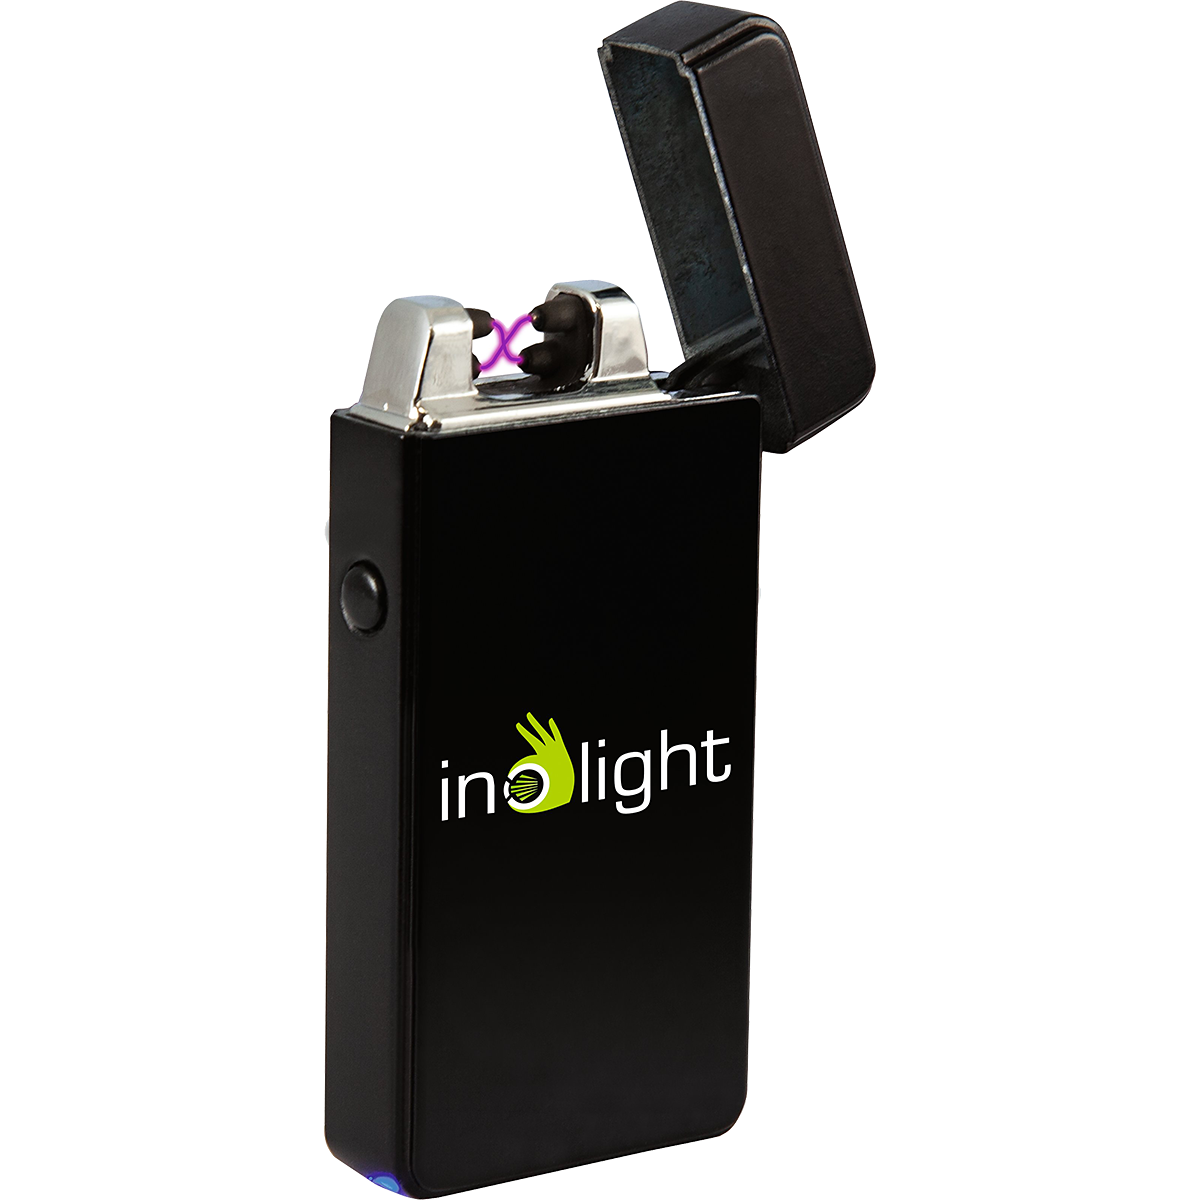 Inolight CL6 kompakt Elektrisk tändare, Micro-USB, väder-säker